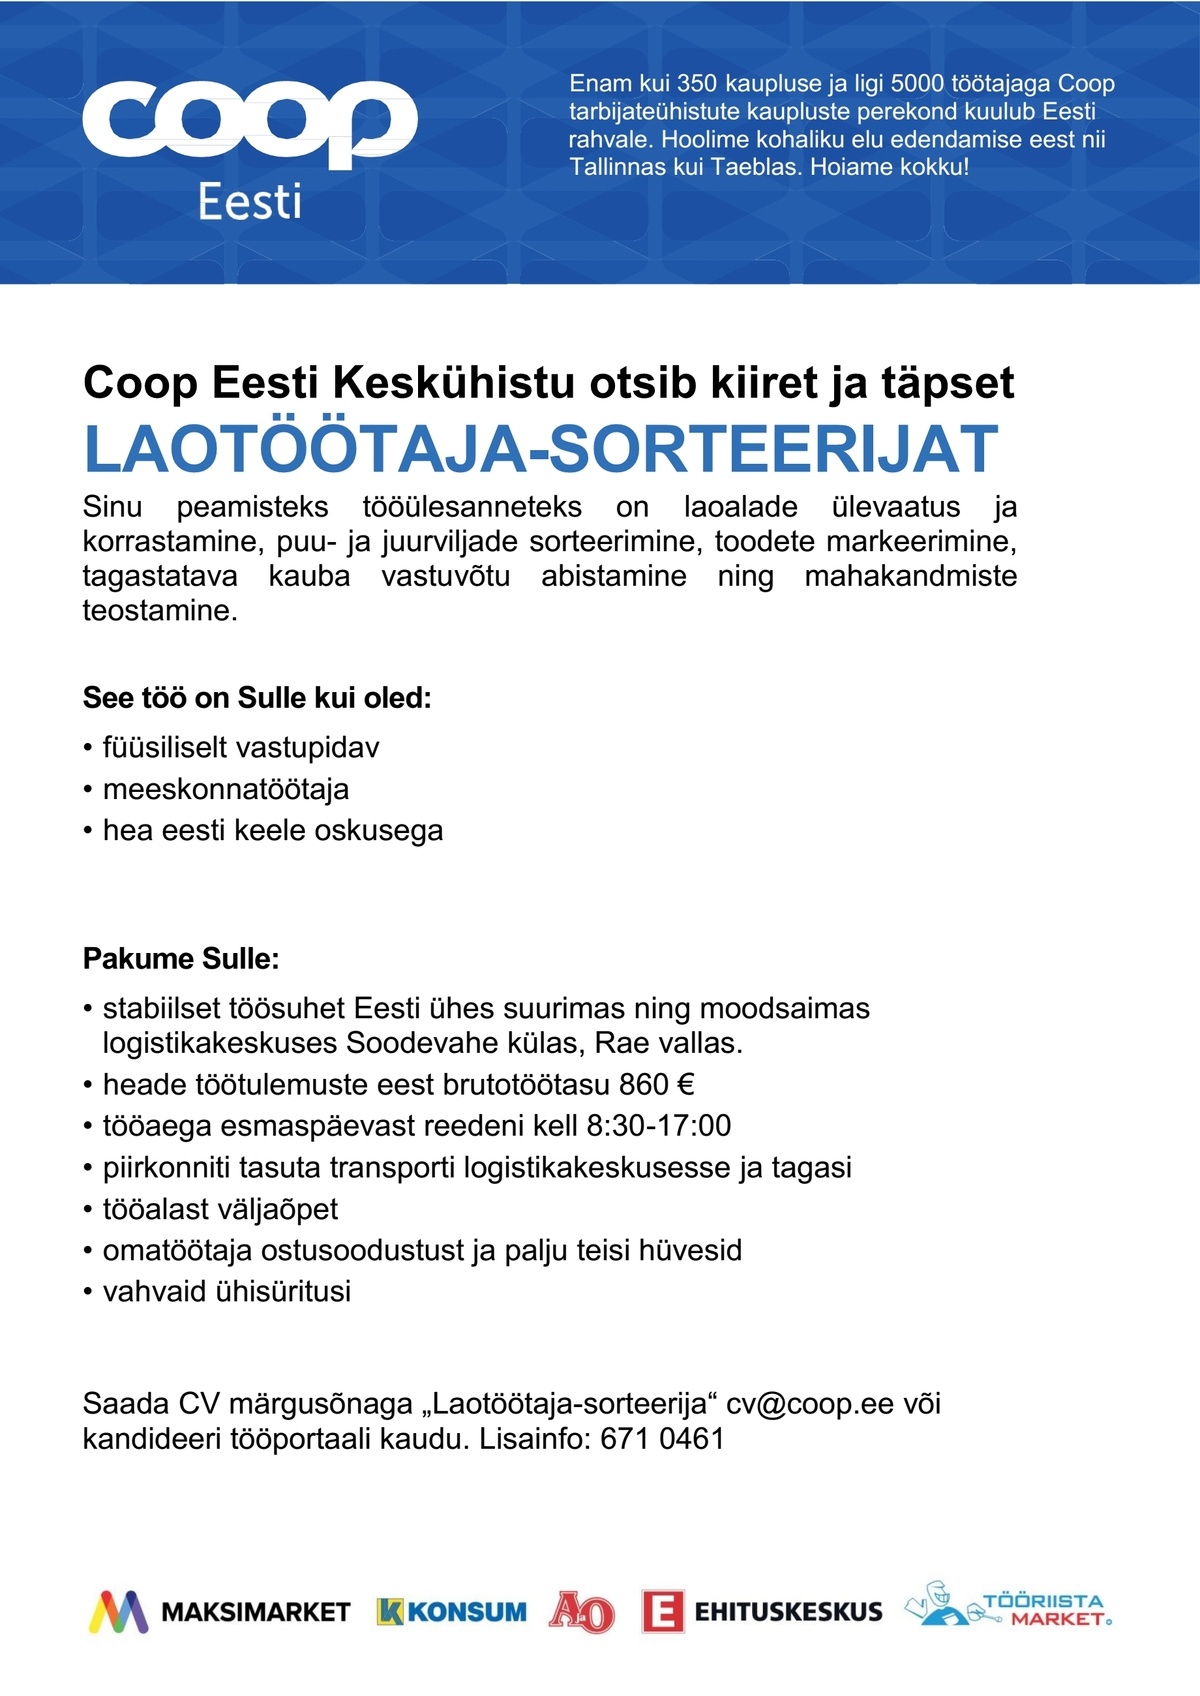 Coop Eesti Keskühistu Laotöötaja-sorteerija (jaheladu)